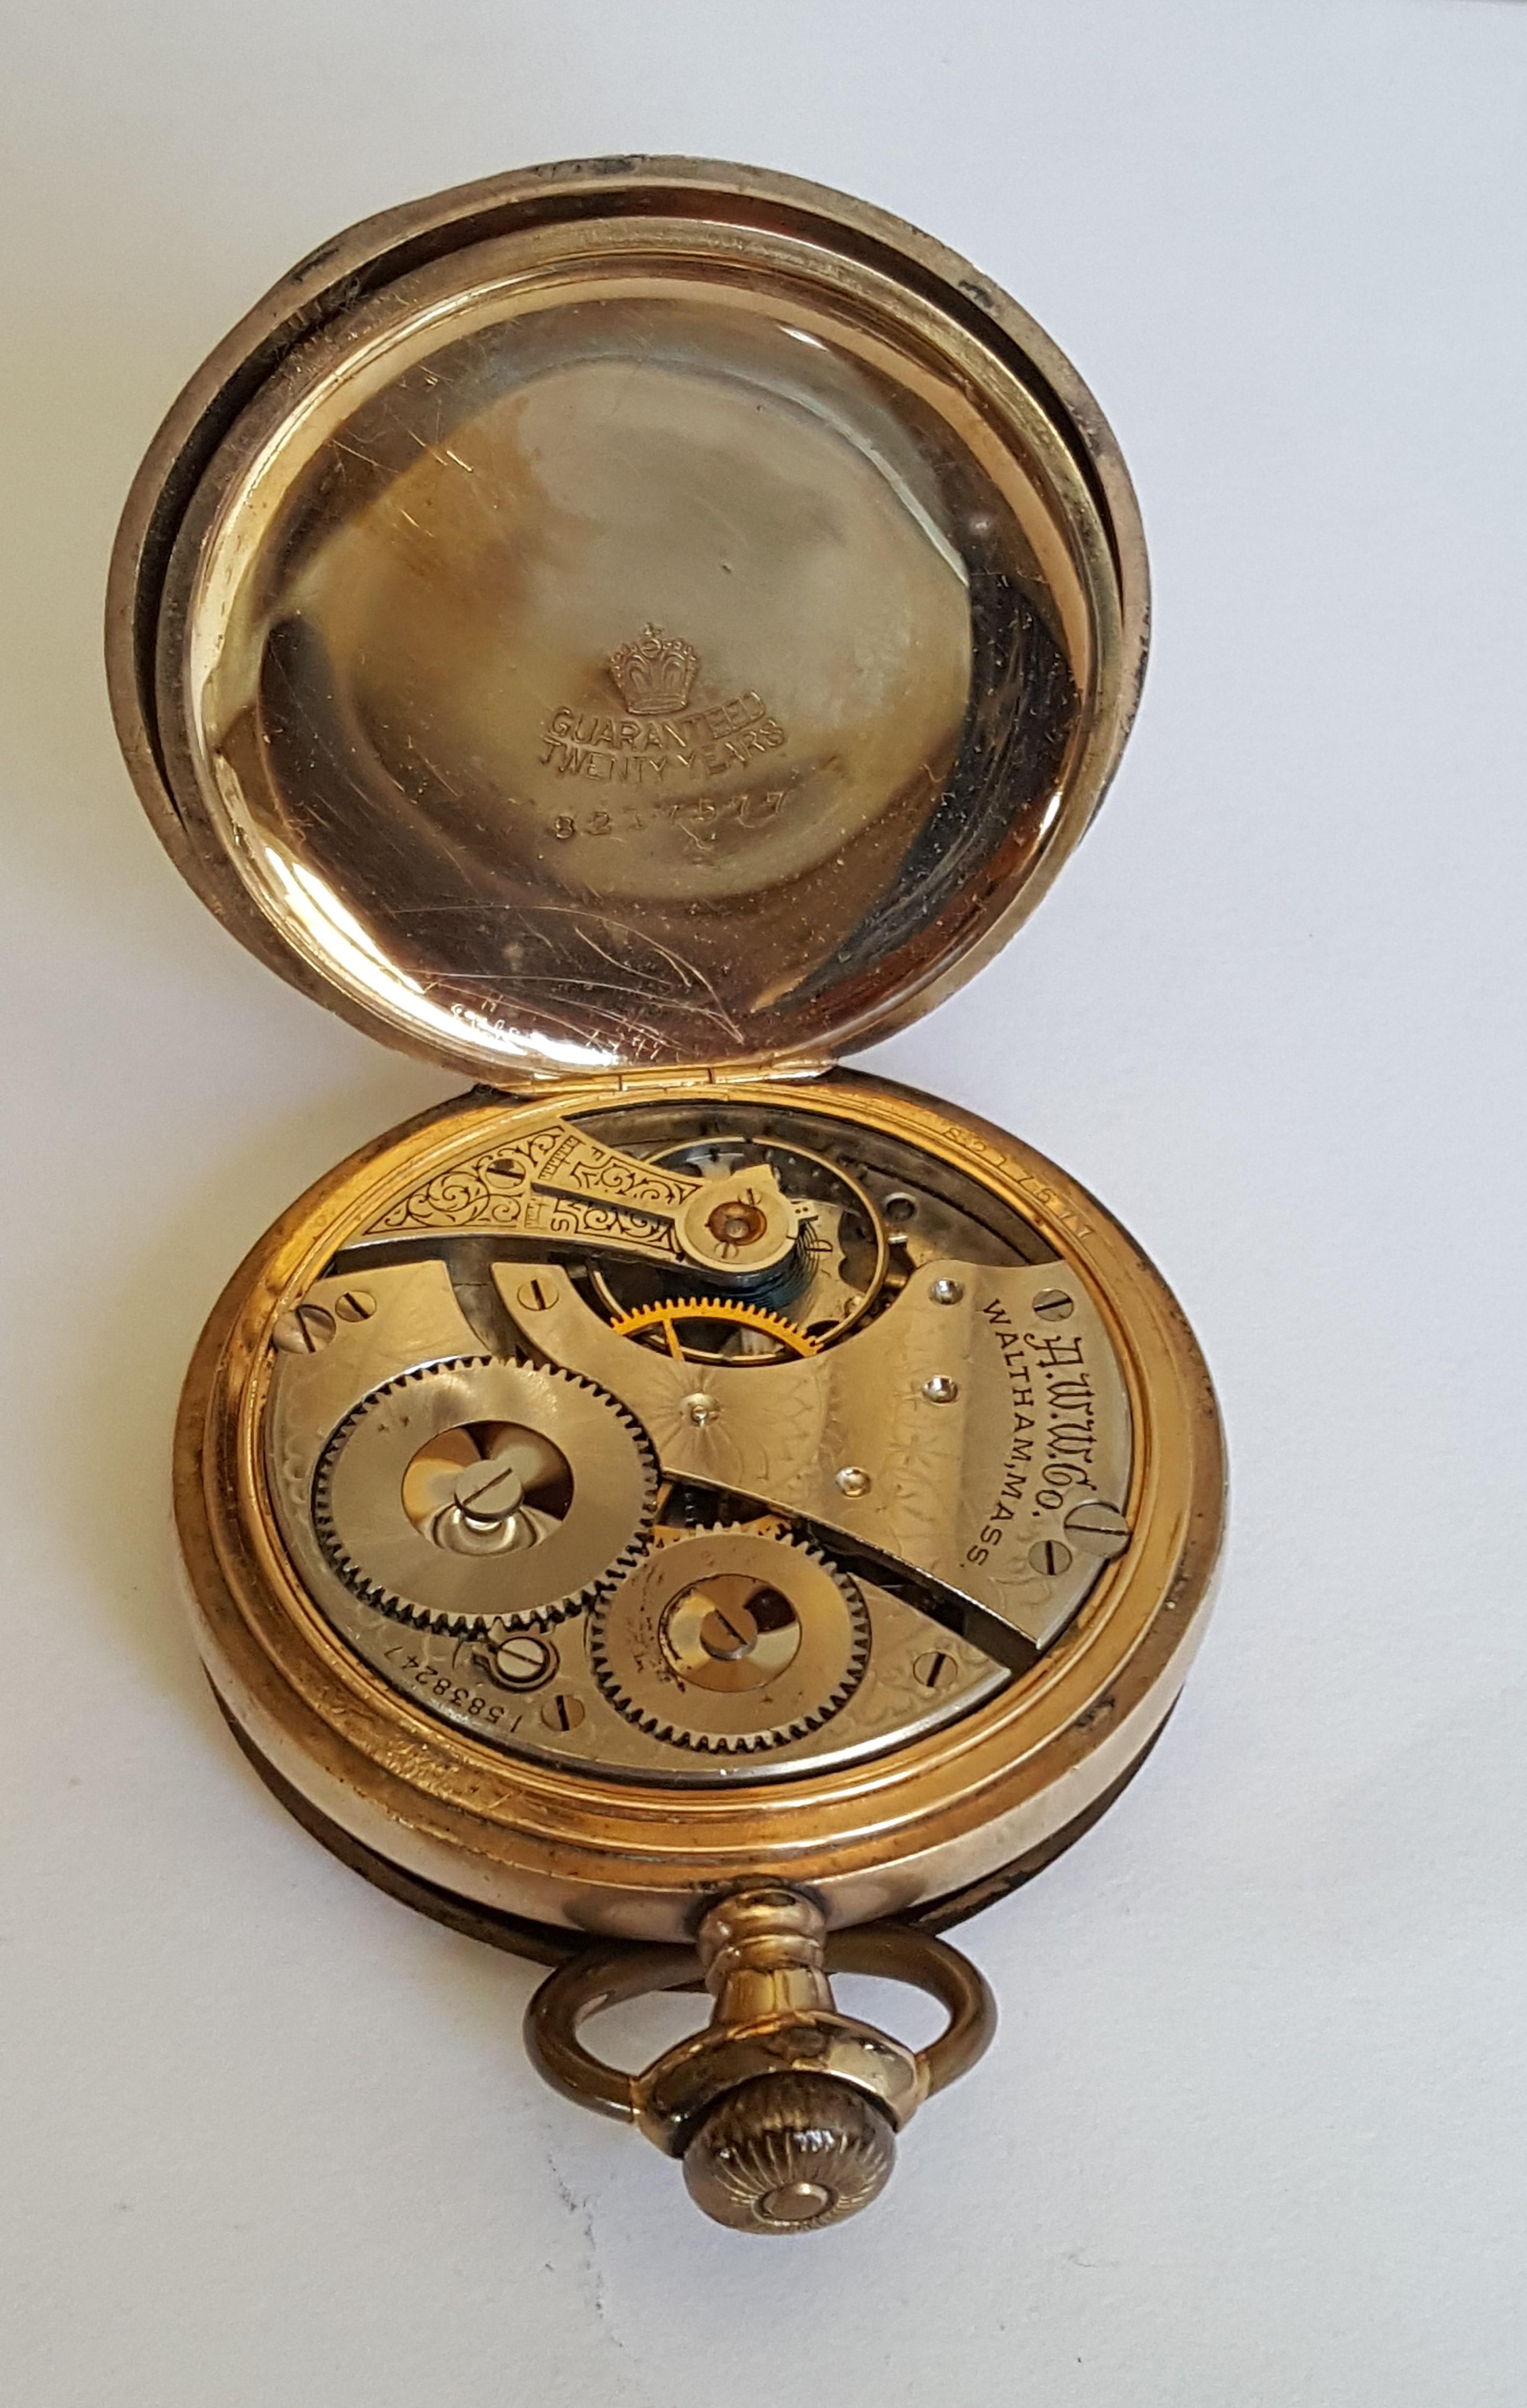 1907 waltham pocket watch